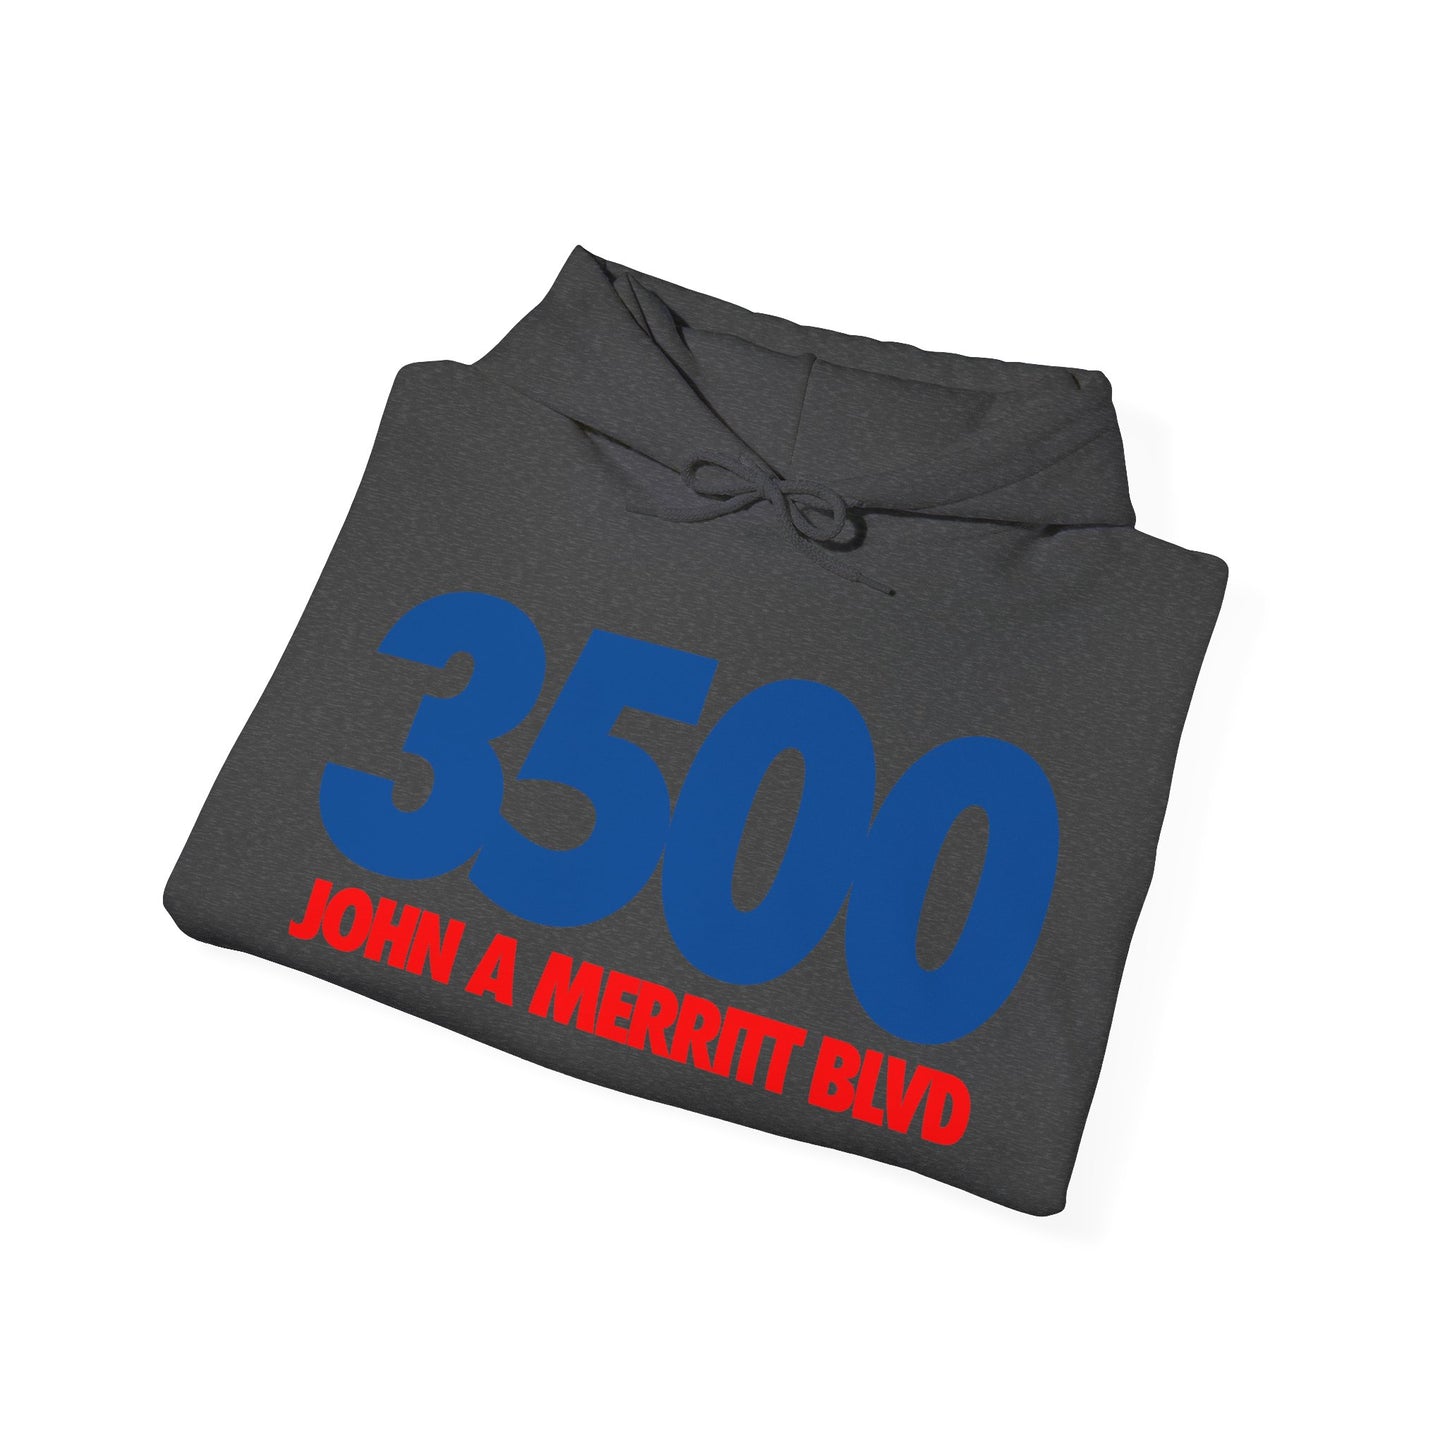 3500 John A. Merritt Blvd. (TSU)